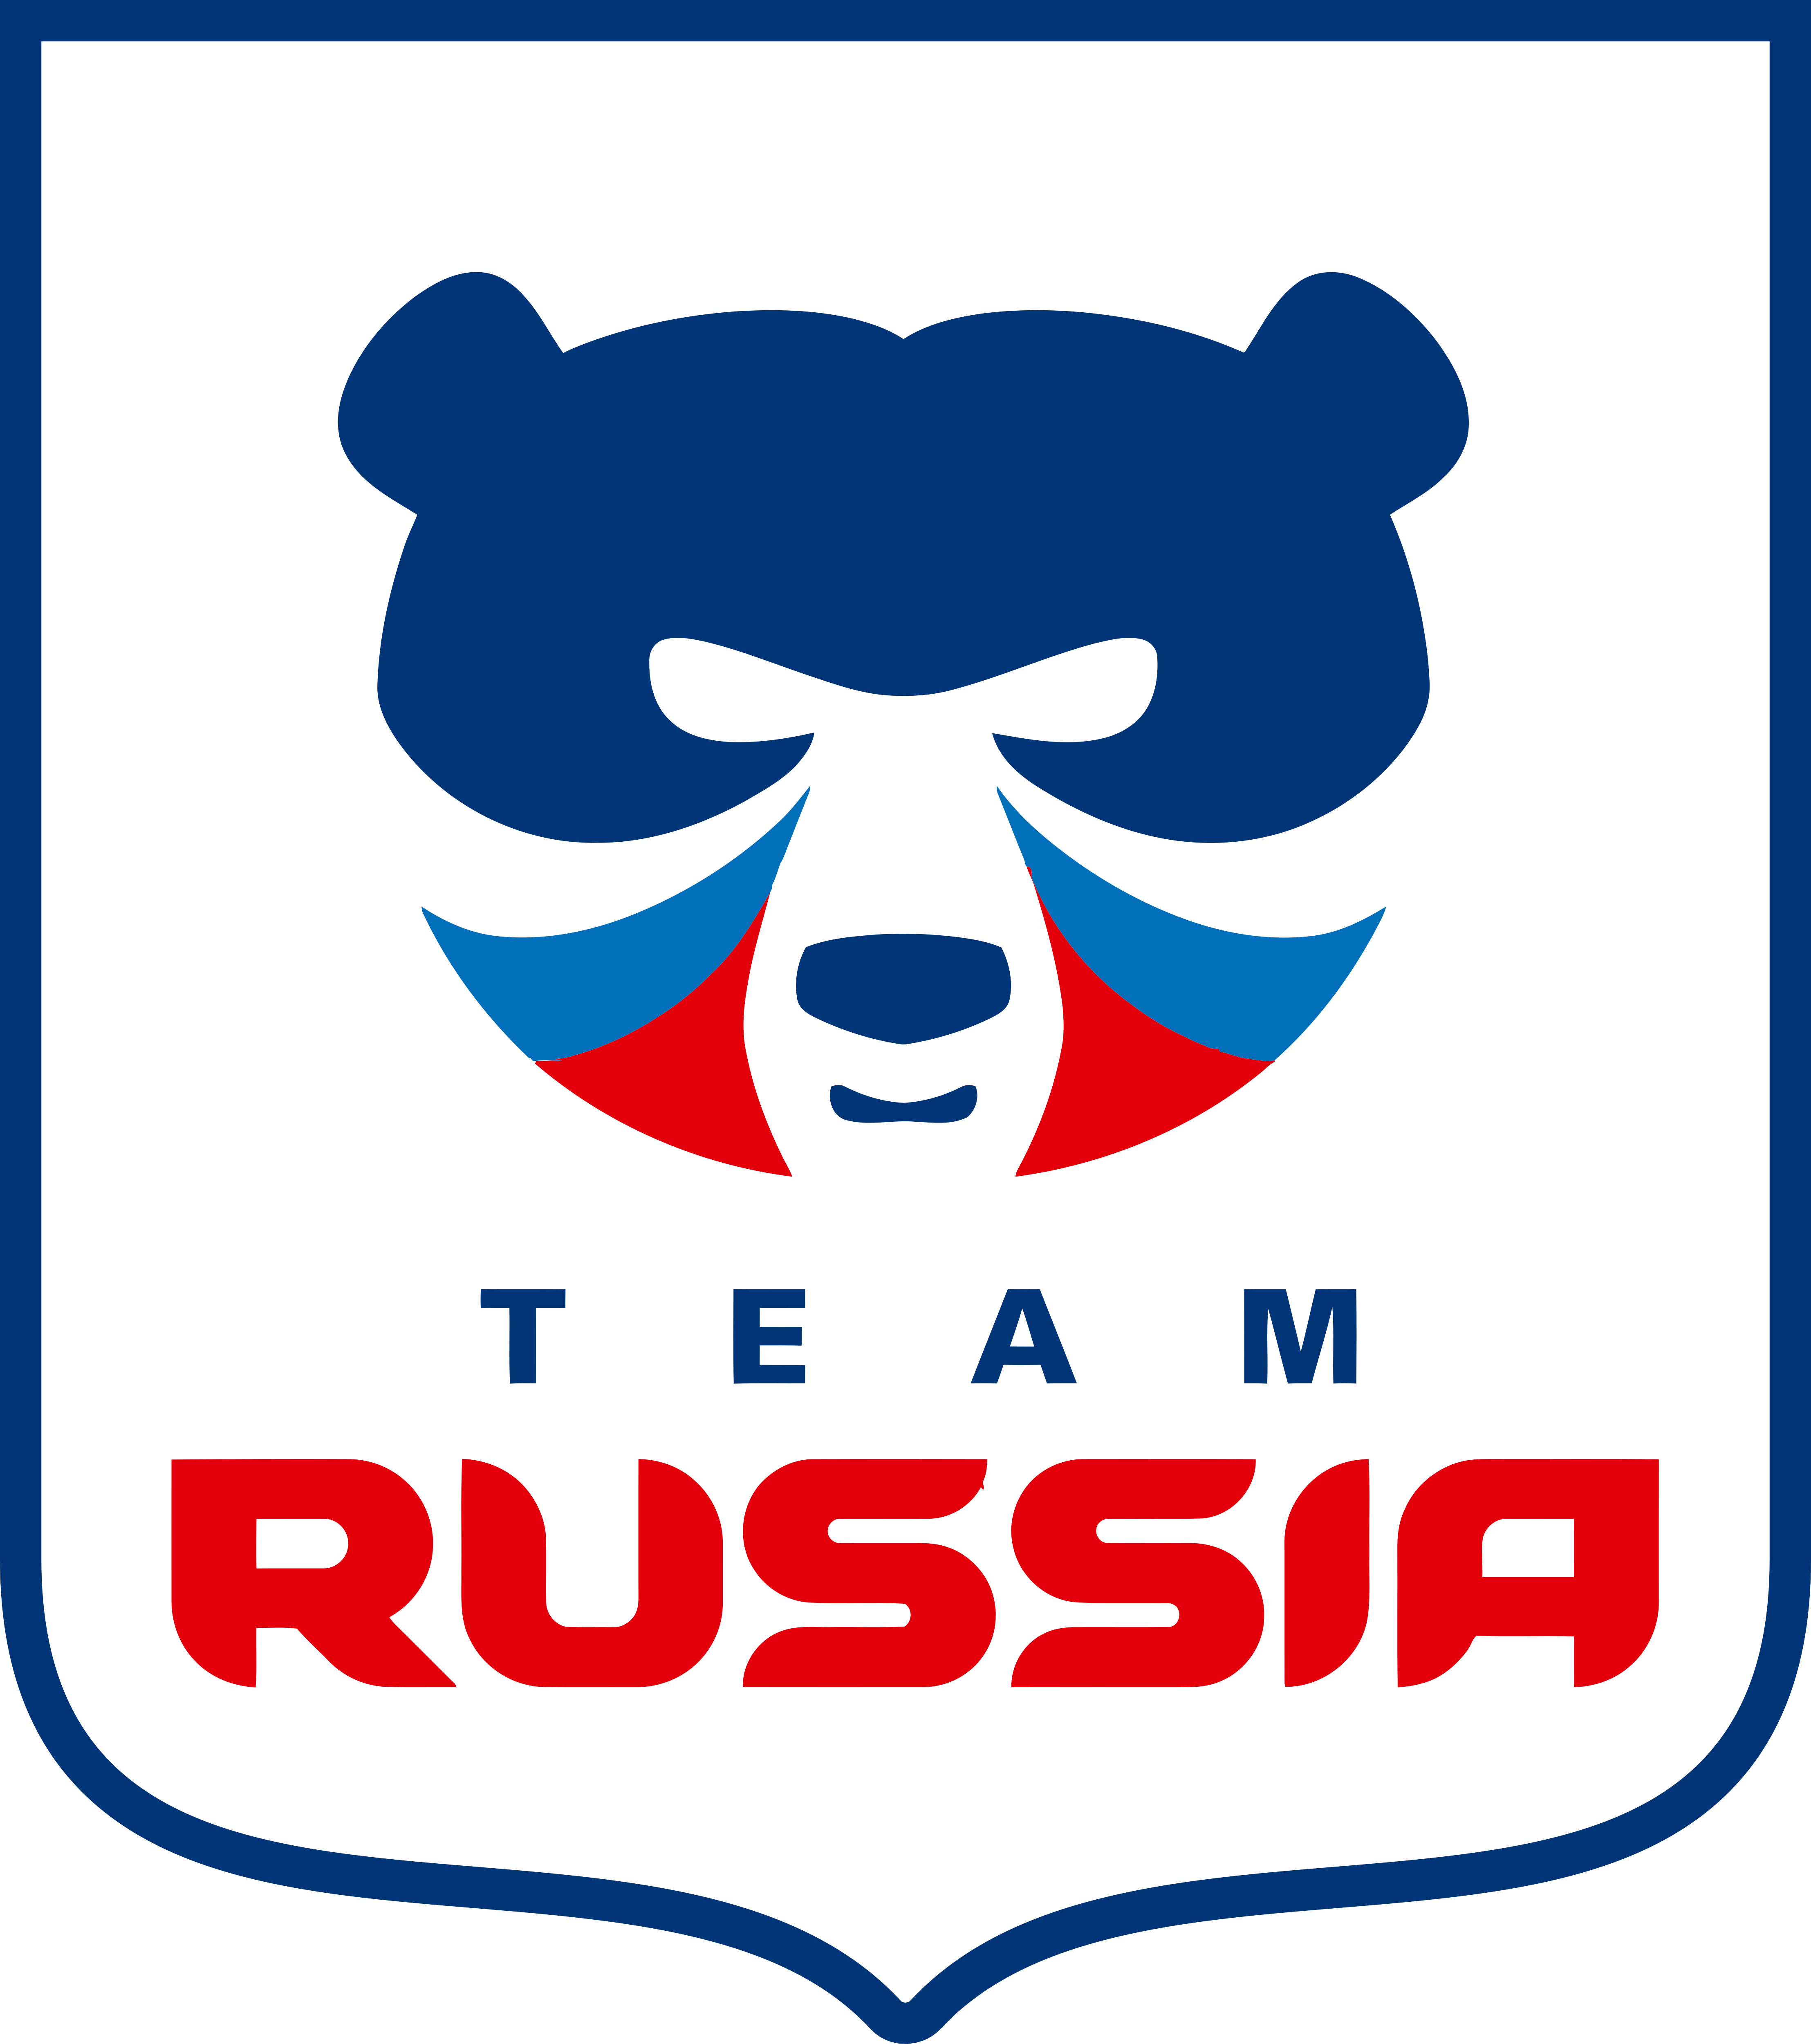 Товар используется членами национальной сборной России